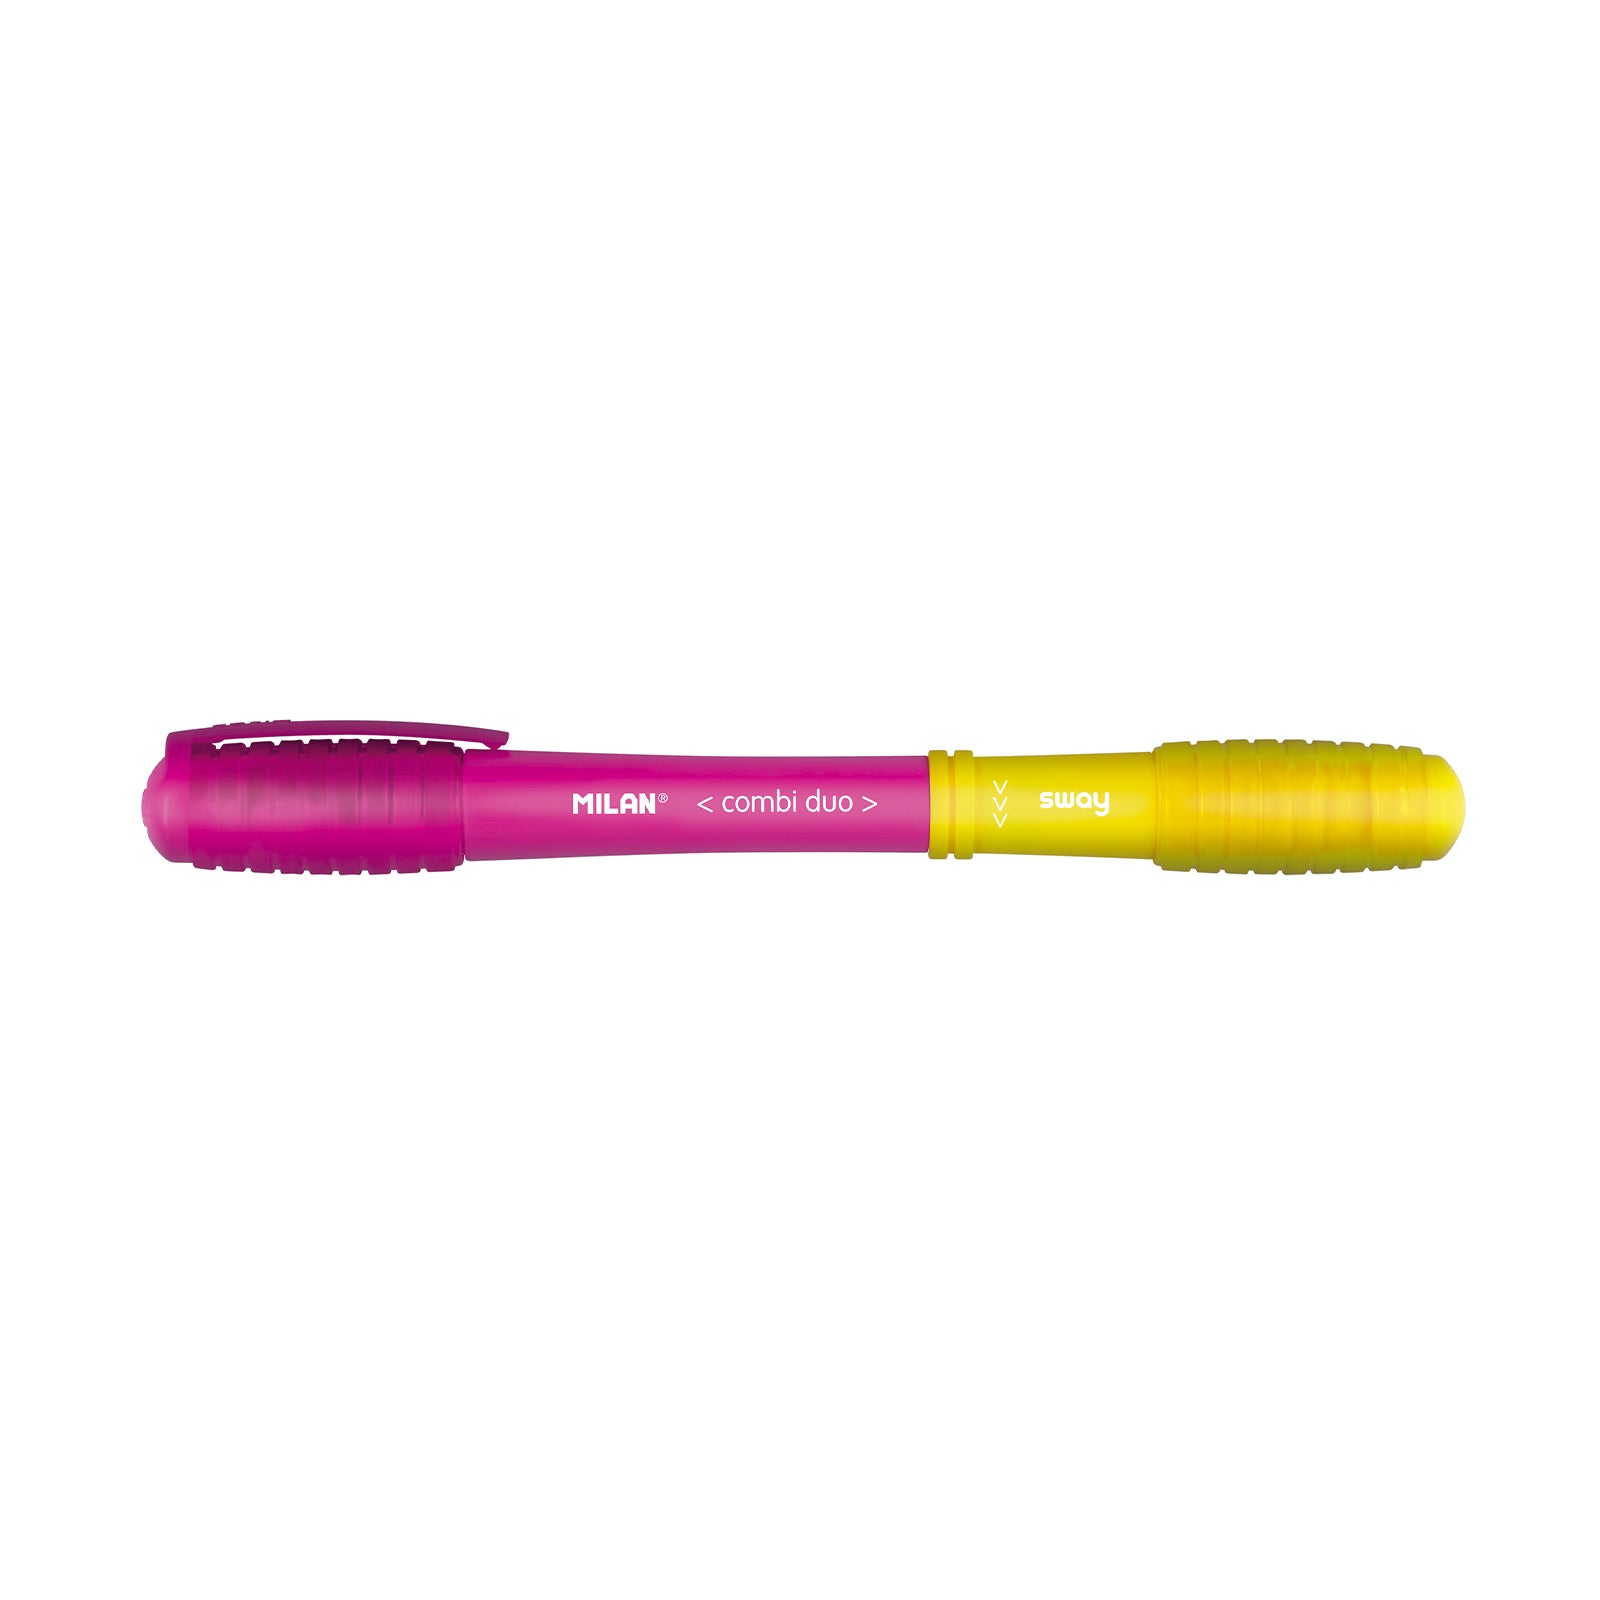 MILAN SWAY - Blíster 3 Bolígrafos Combi Duo con 6 Combinaciones Distintas de Colores